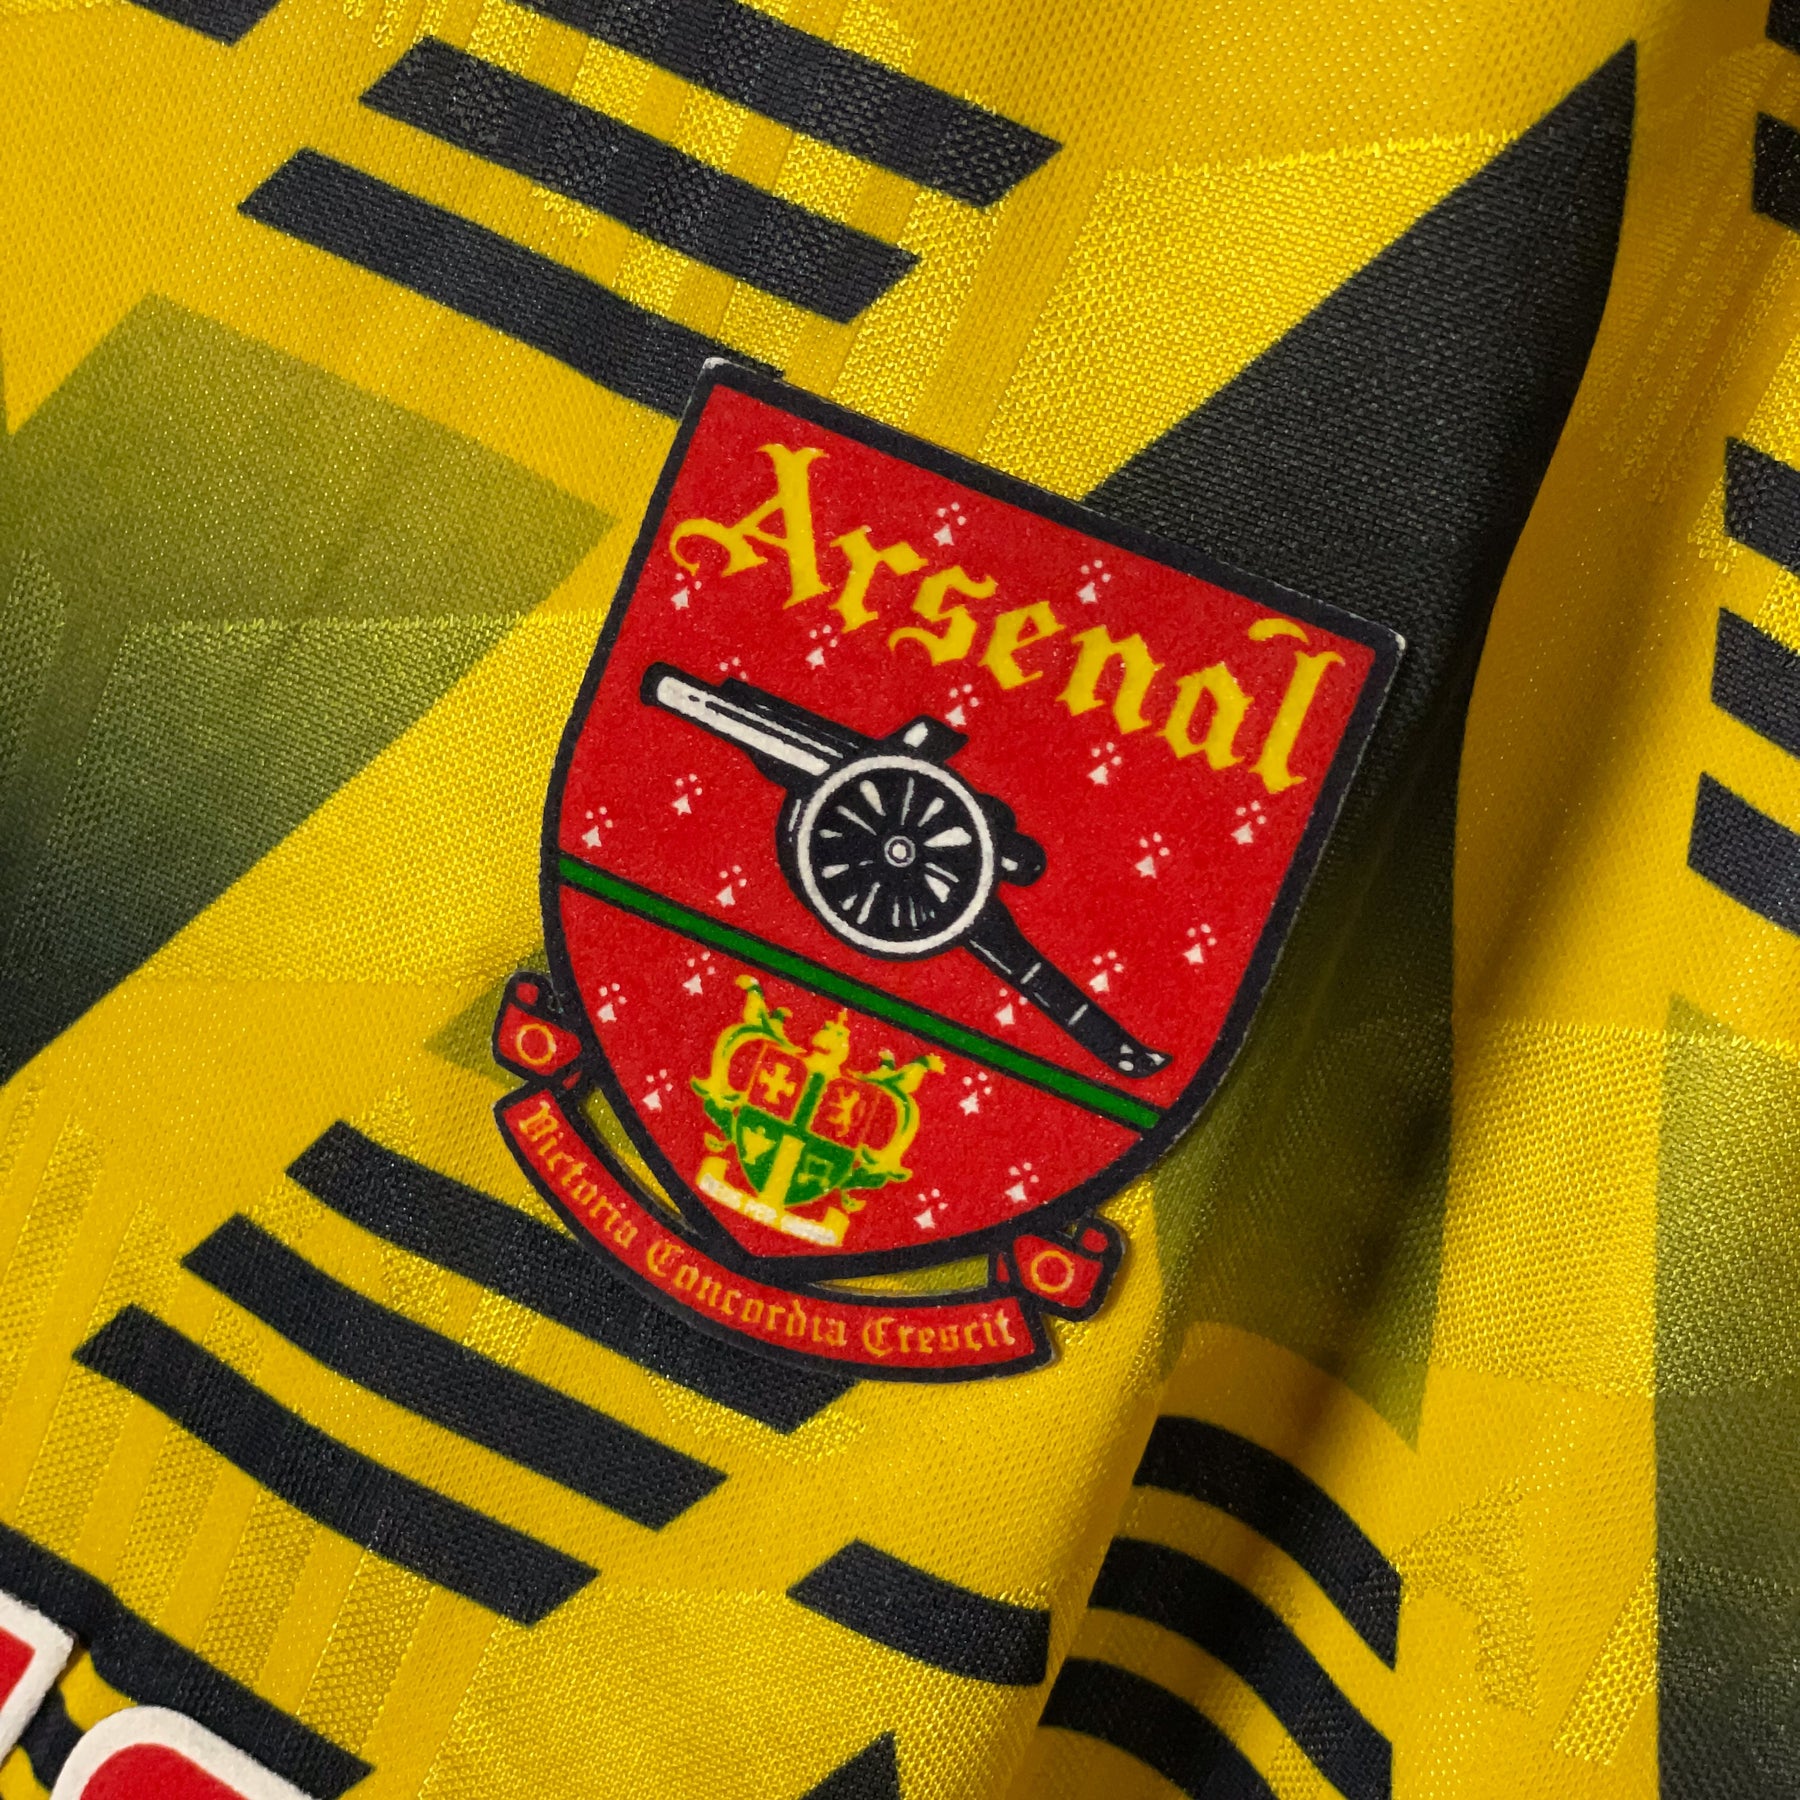 Arsenal's Adidas Bruised Banana Kit - Classic Football Shirts